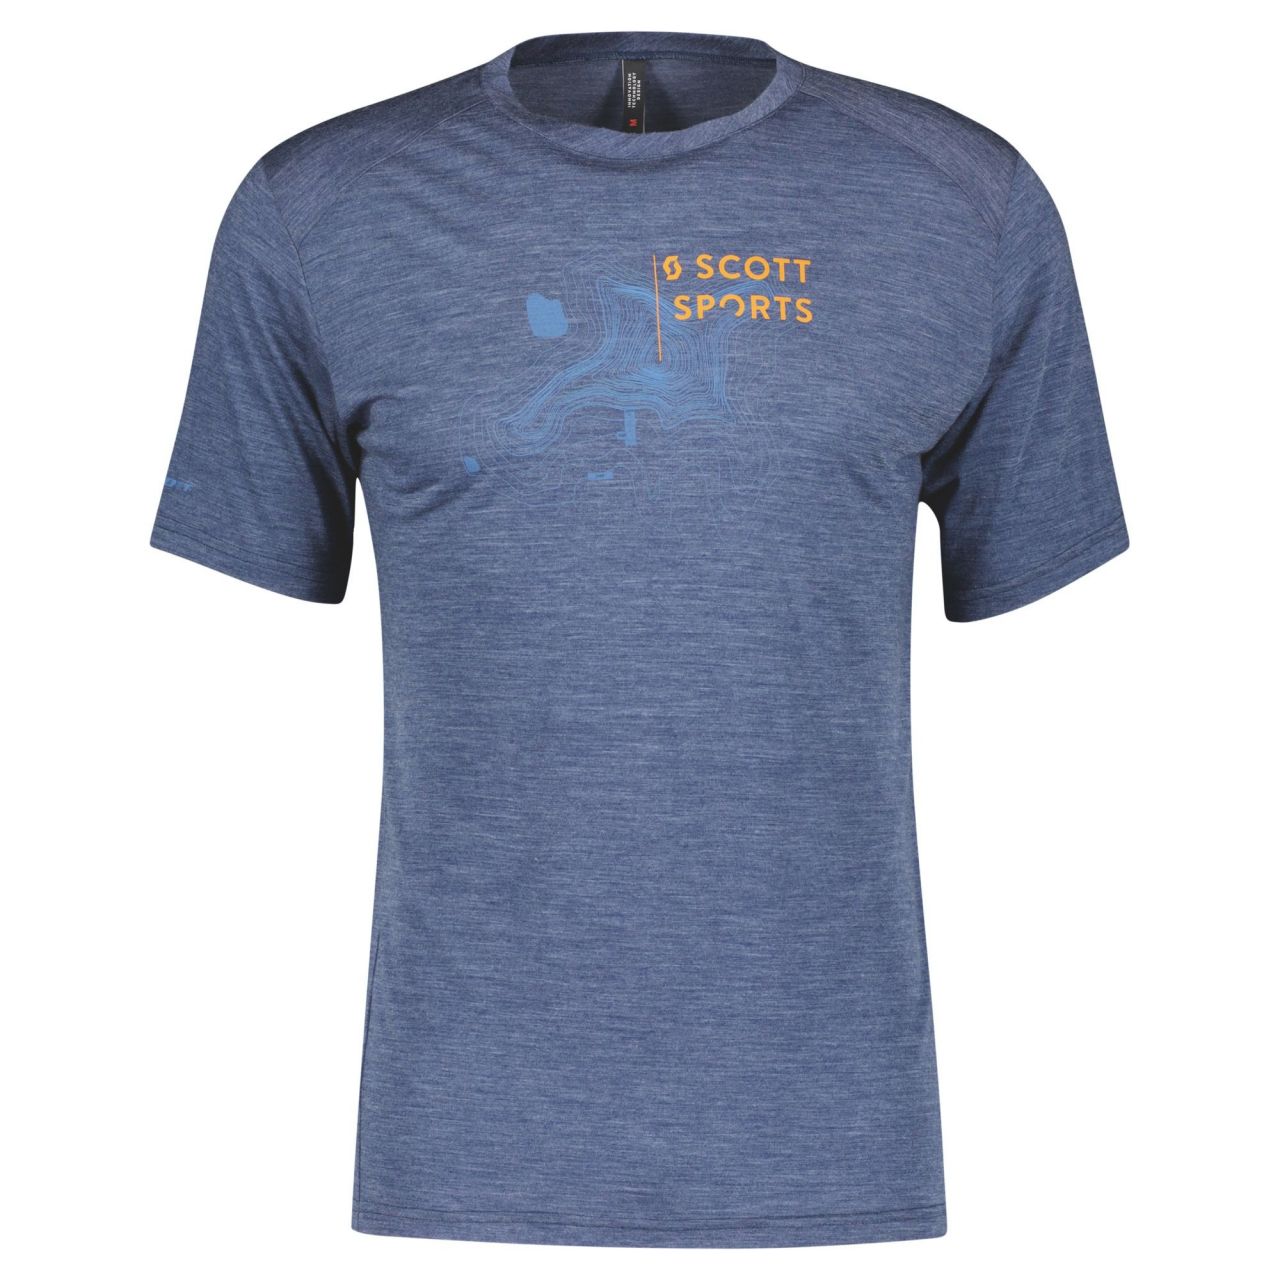 SCOTT TEE SHIRT SCOTT DEFINED MERINO SS MIDNIGHT BLUE  Tech Tee shirt running